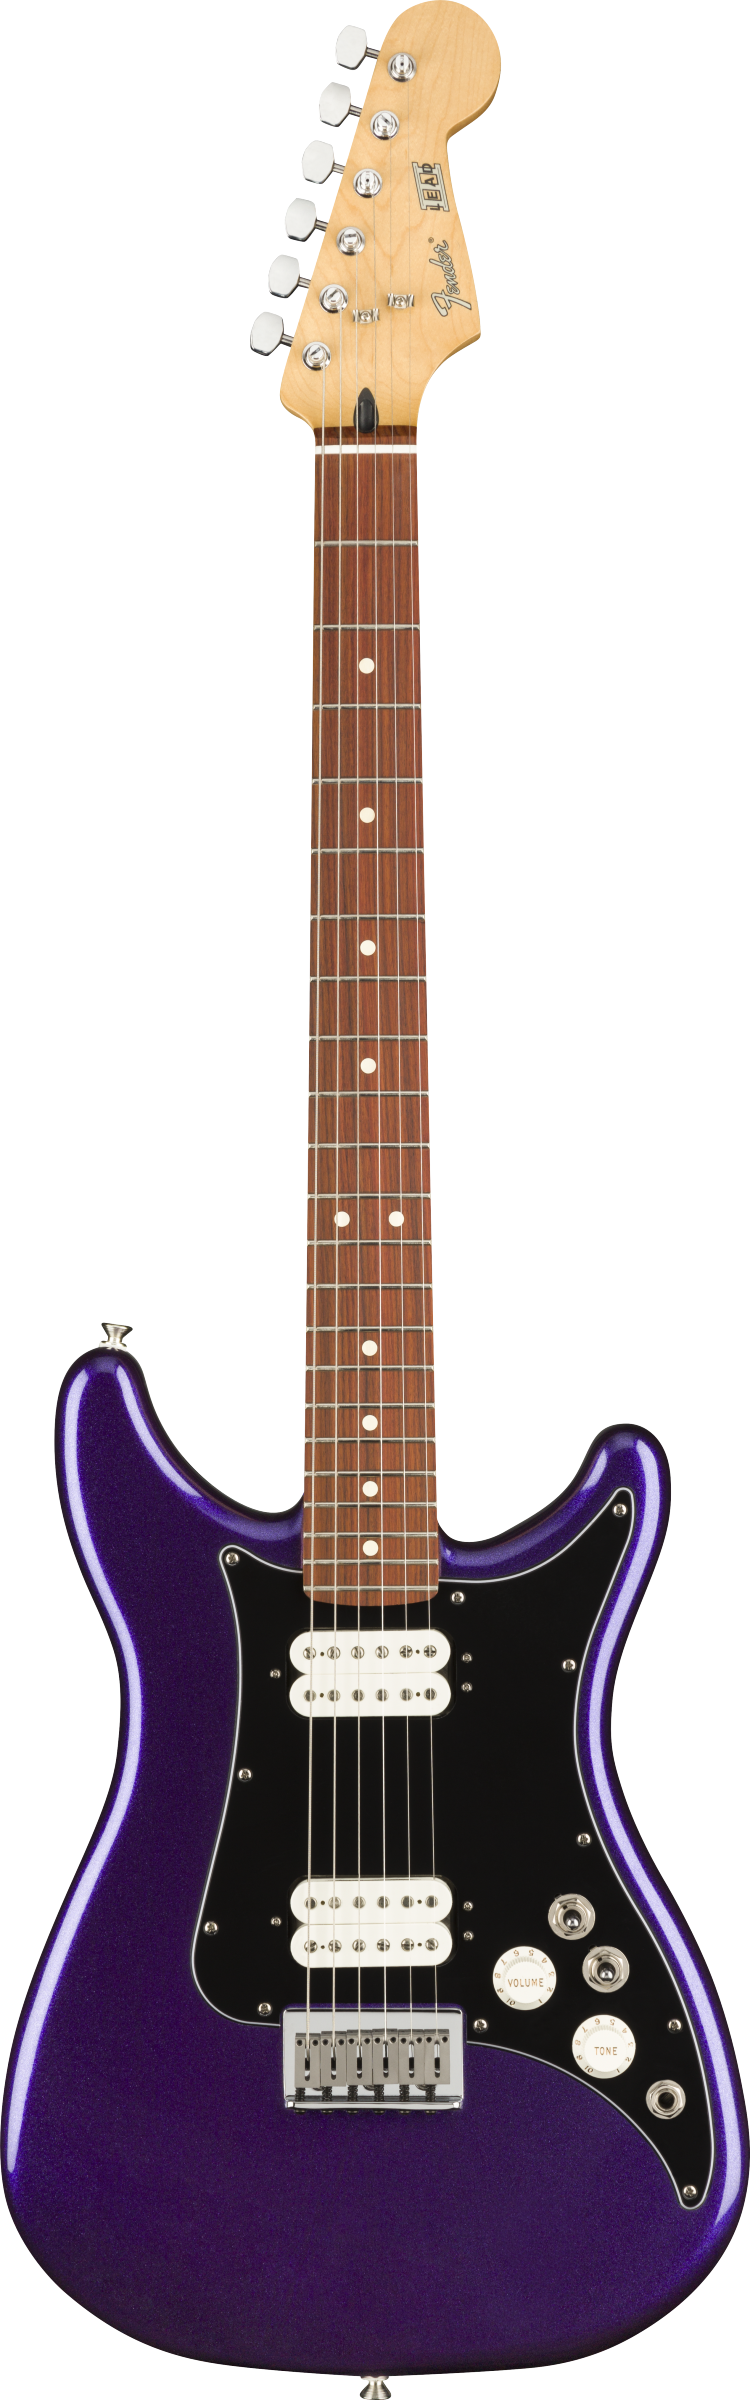 Player Lead III Metallic Purple